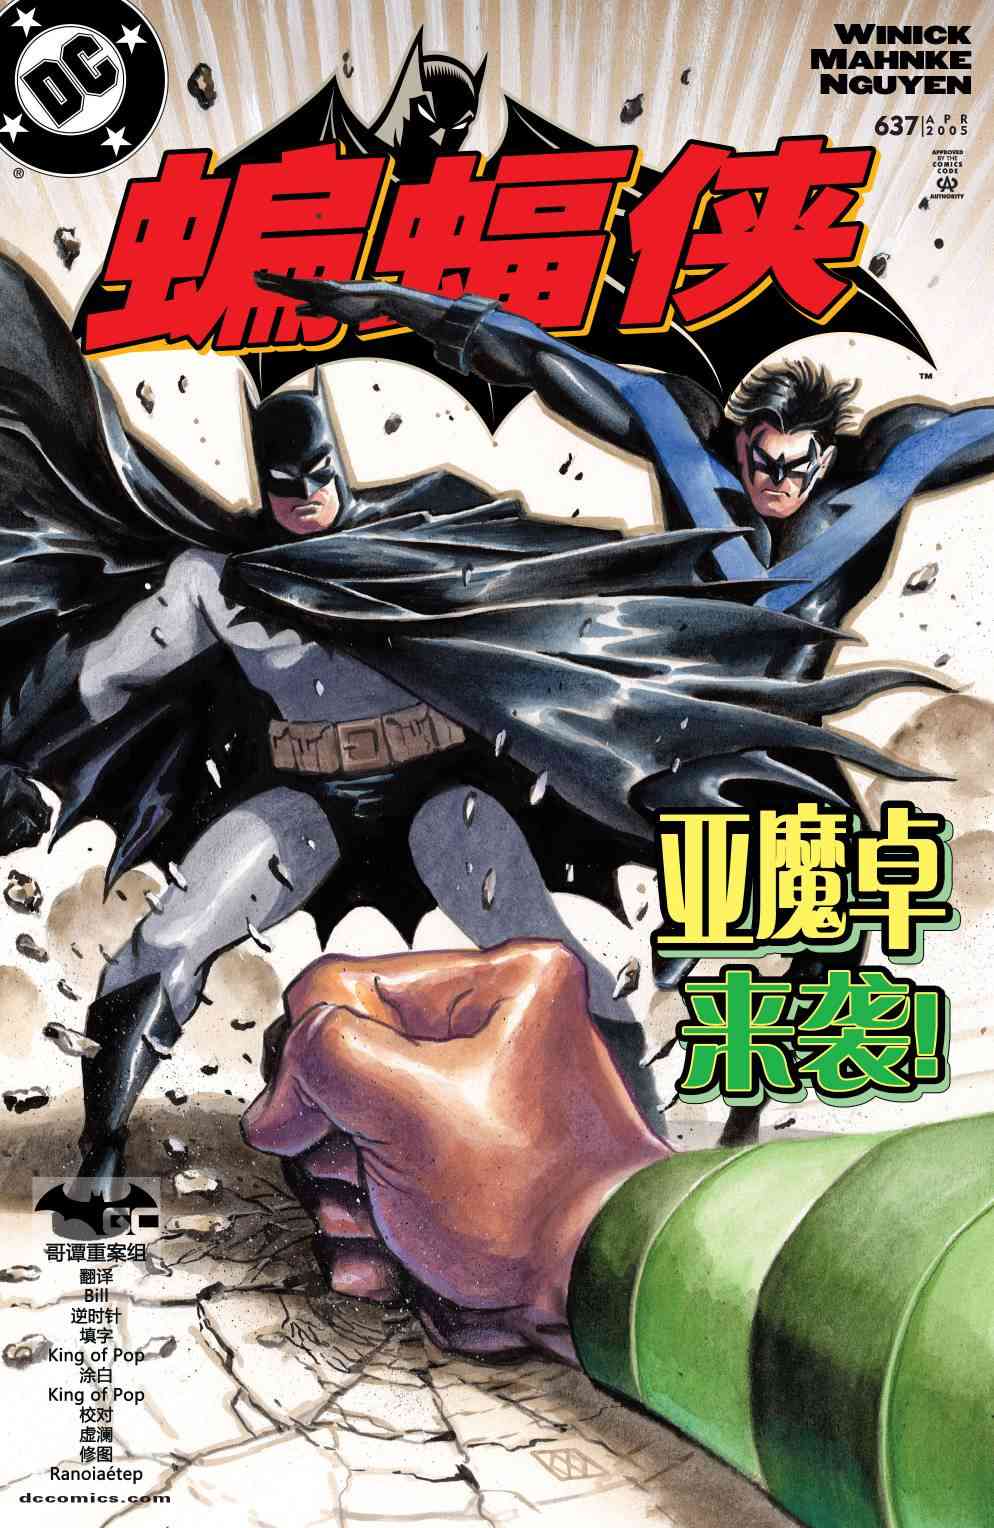 蝙蝠俠 - 第637卷頭罩之下#3 - 1